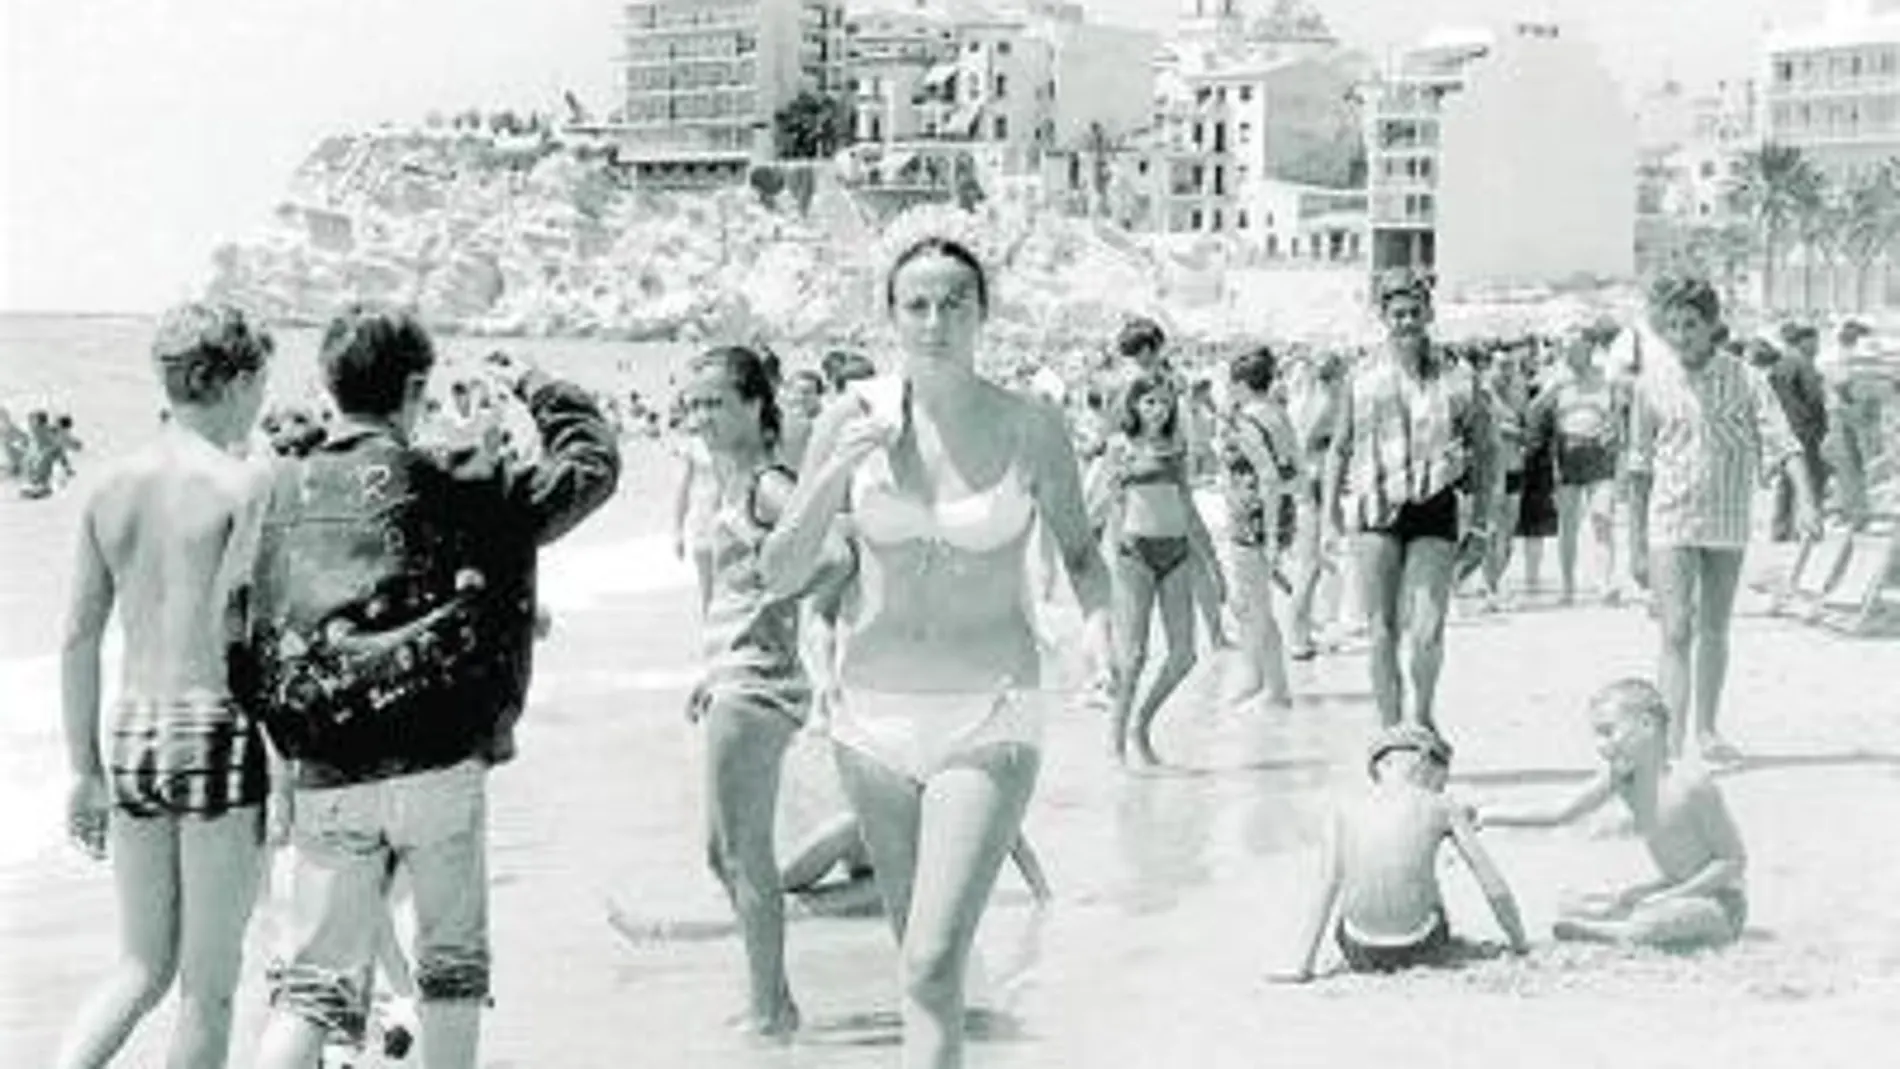 Imagen de los bañistas disfrutando de las vacaciones en una playa durante la década de los 60